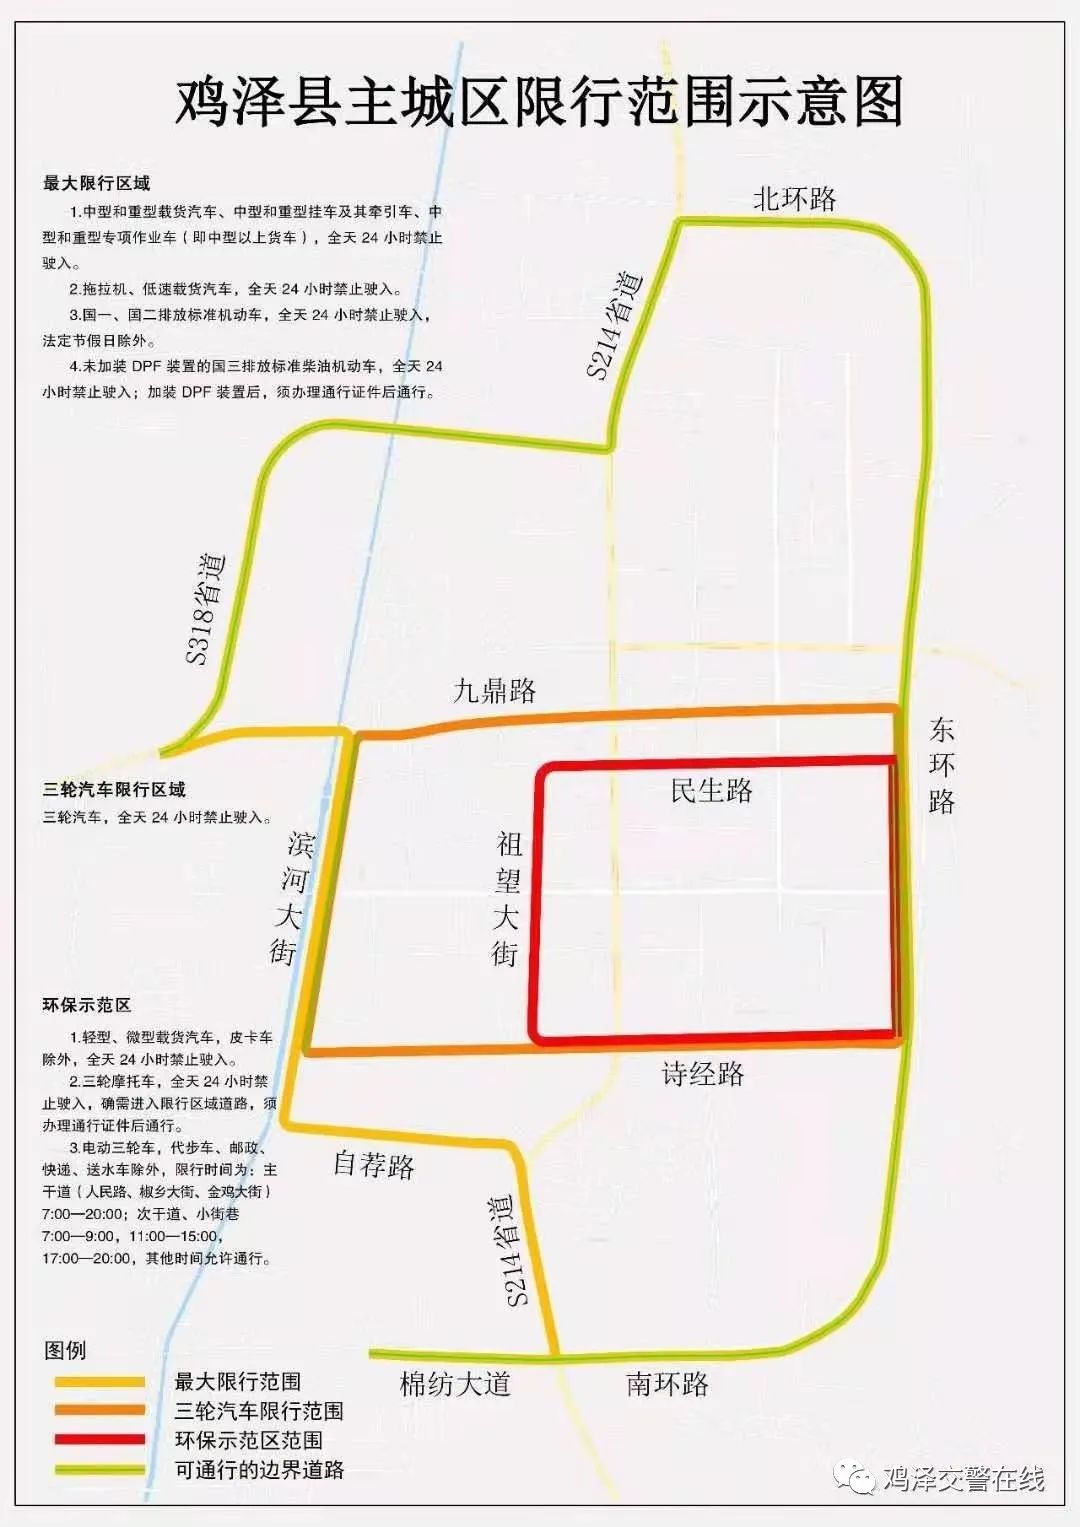 收好这几张图,鸡泽县单行道,限号区域,货车限行范围都